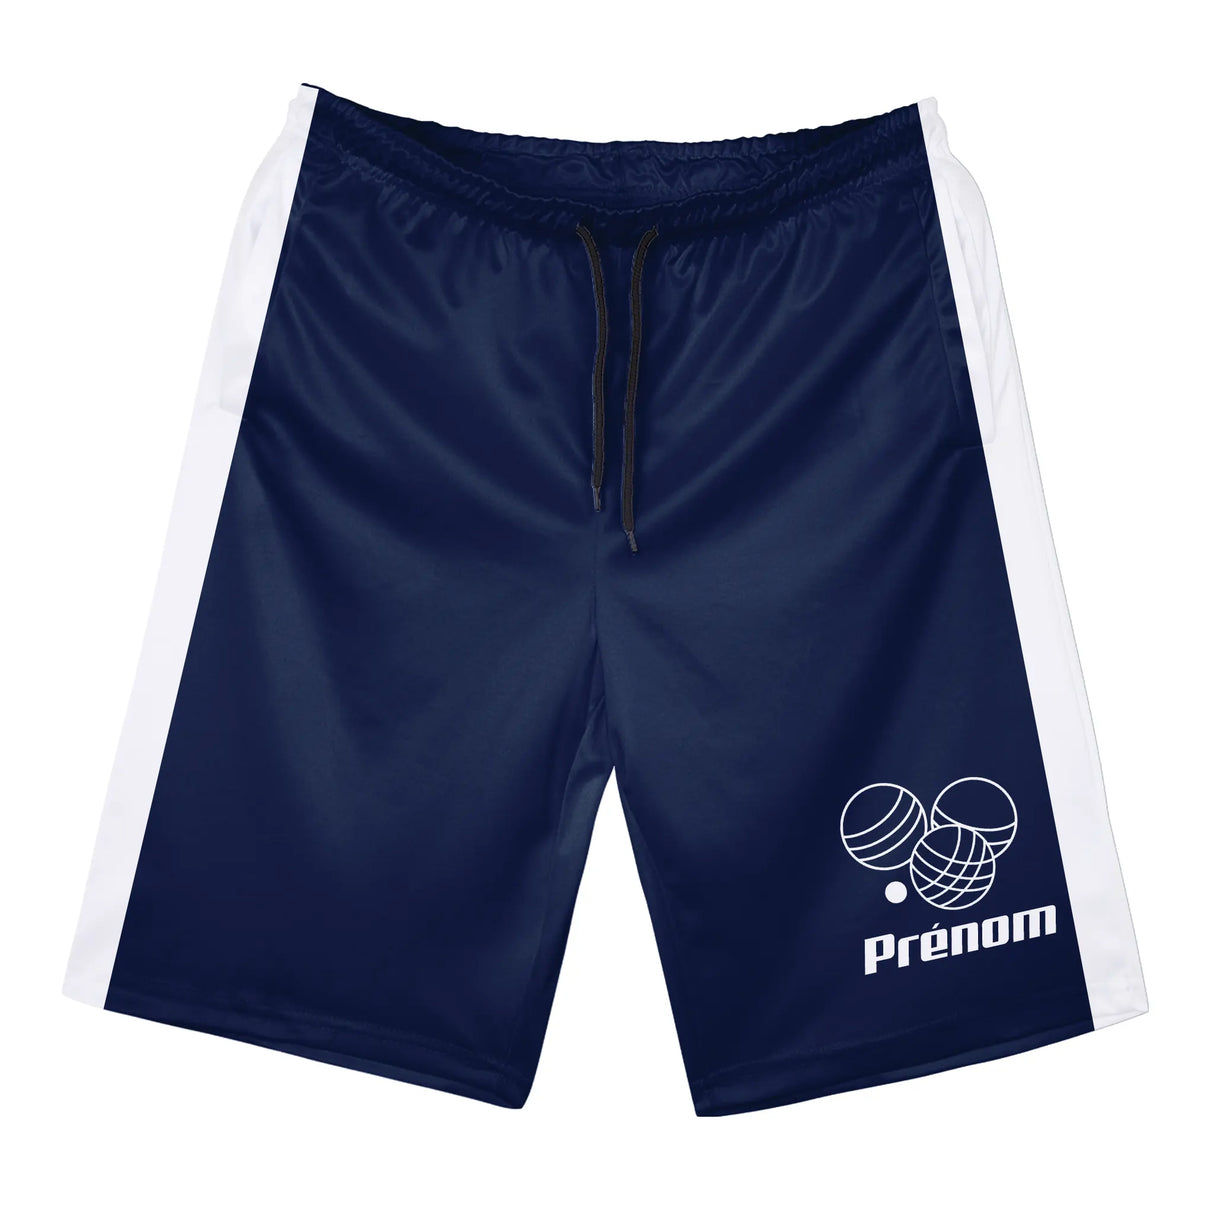 Shorts de Sport Prénom – Confort et Style pour Chaque Match - A010724N36 - Bleu marine